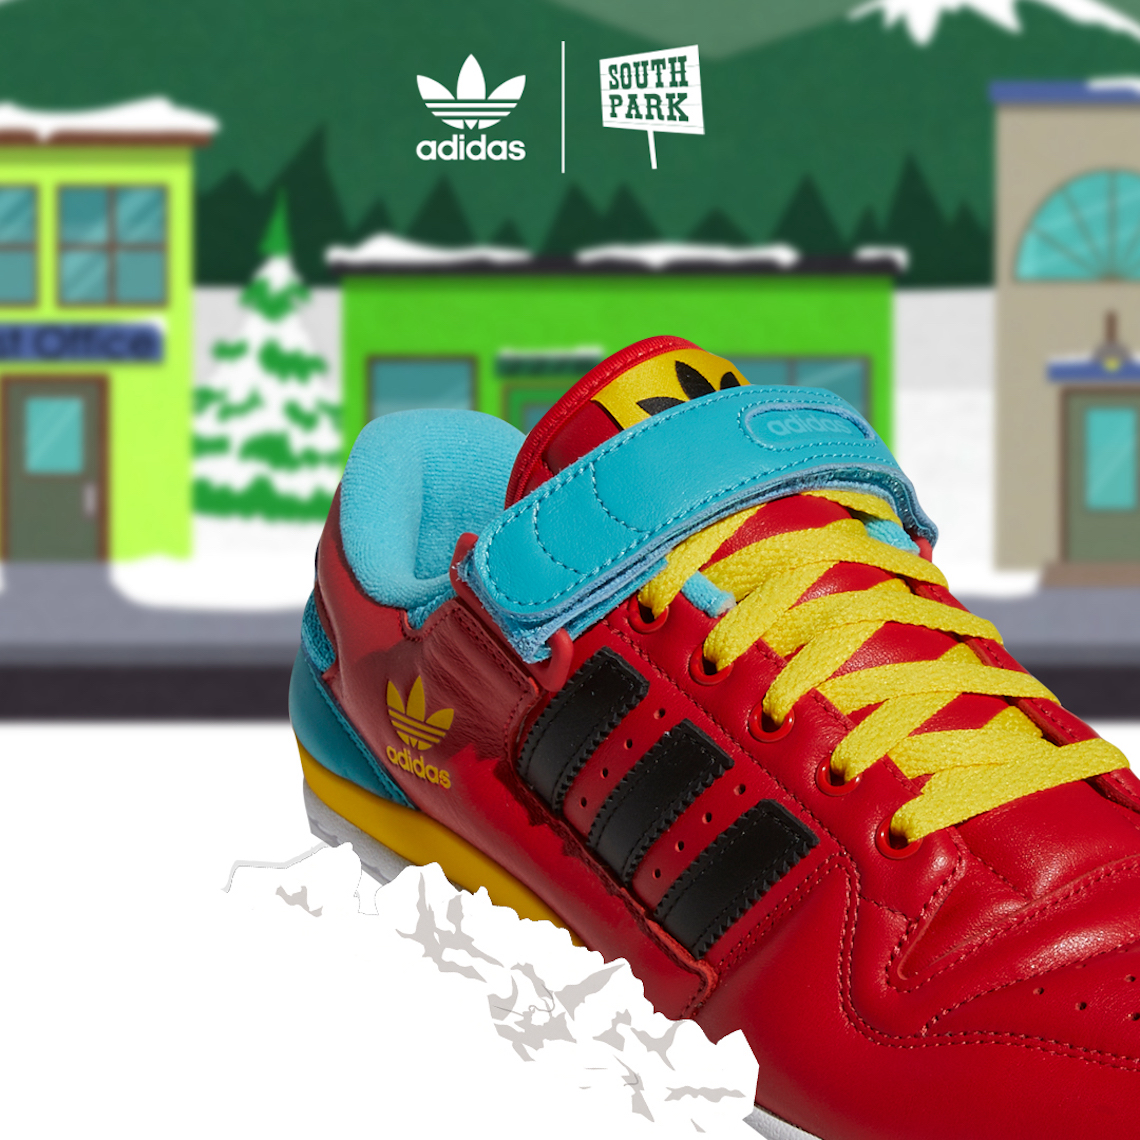 South Park Adidas Foot Locker March 2022 6